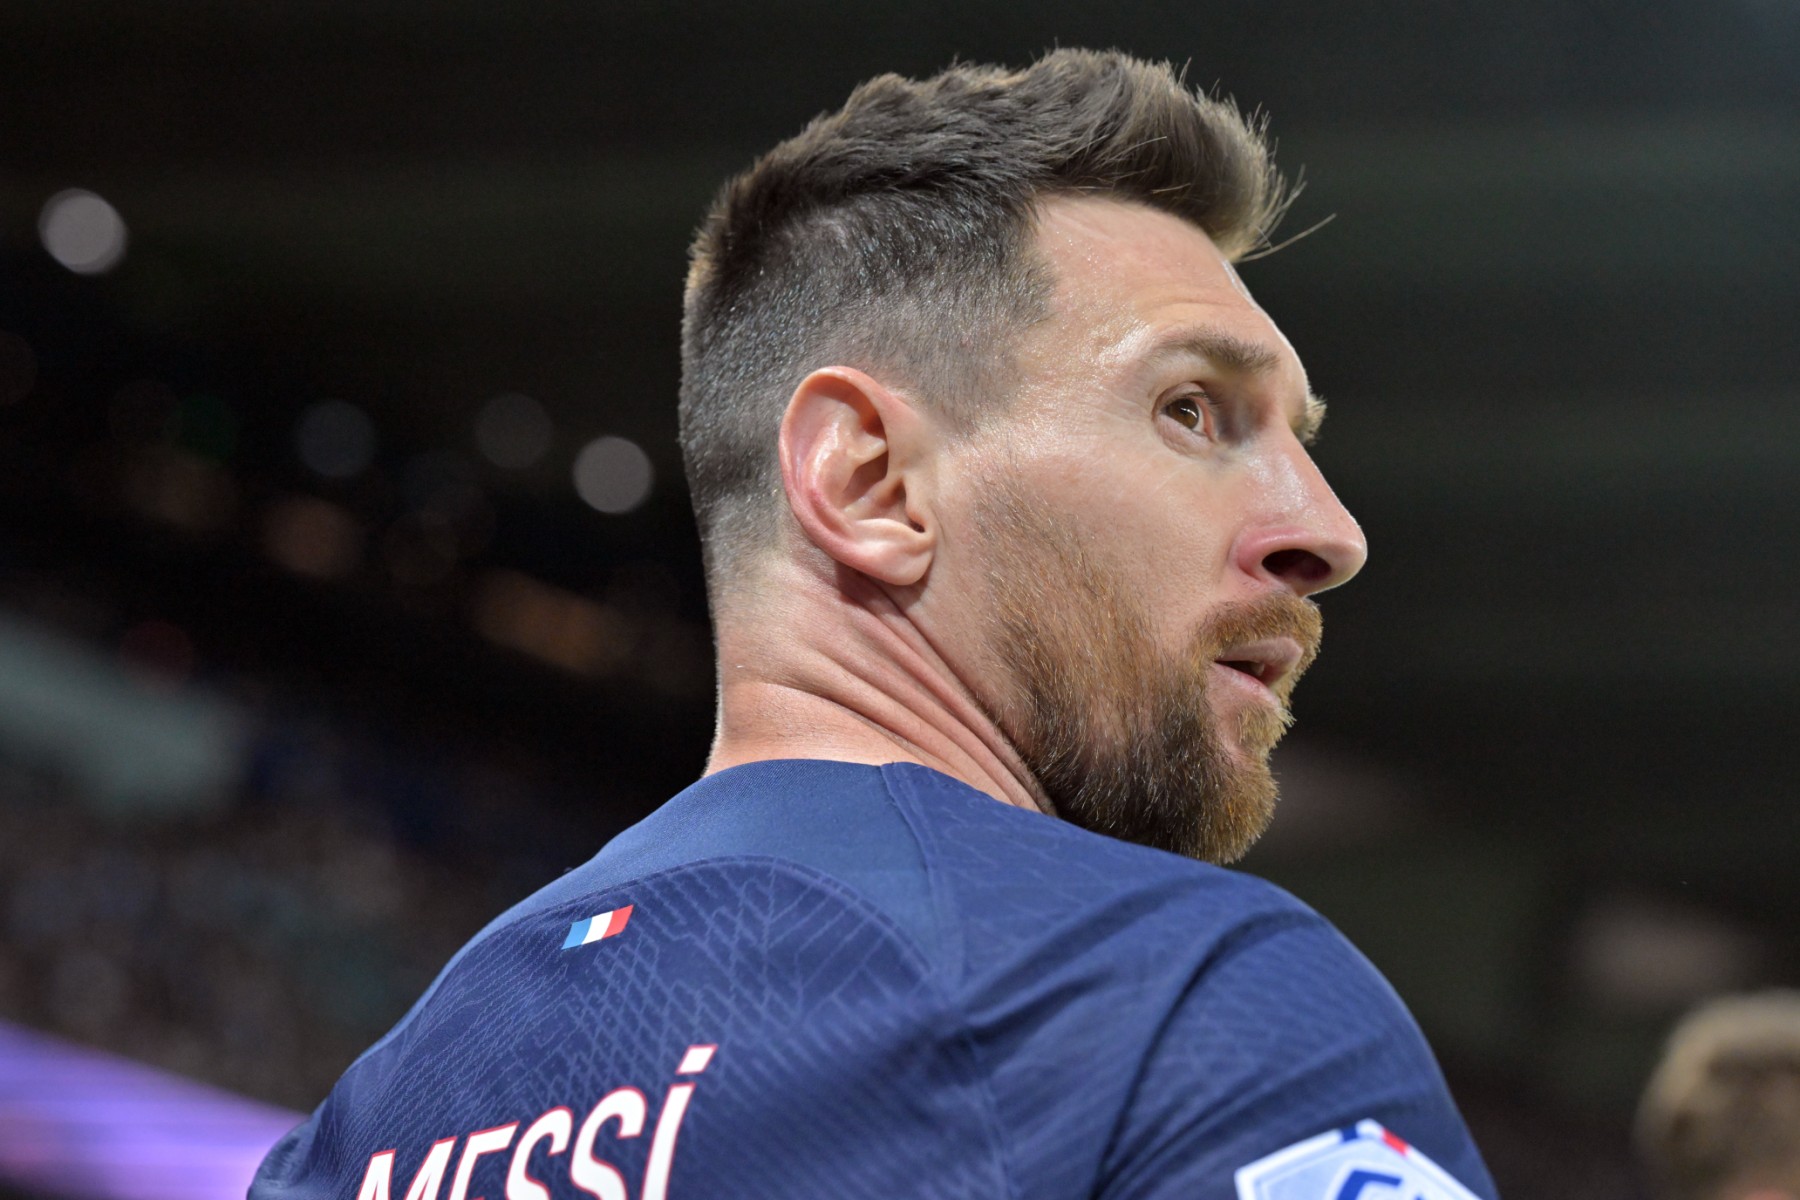 Mái tóc Lionel Messi từ 'ngố' tới bạch kim sành điệu đã thay đổi như thế  nào?